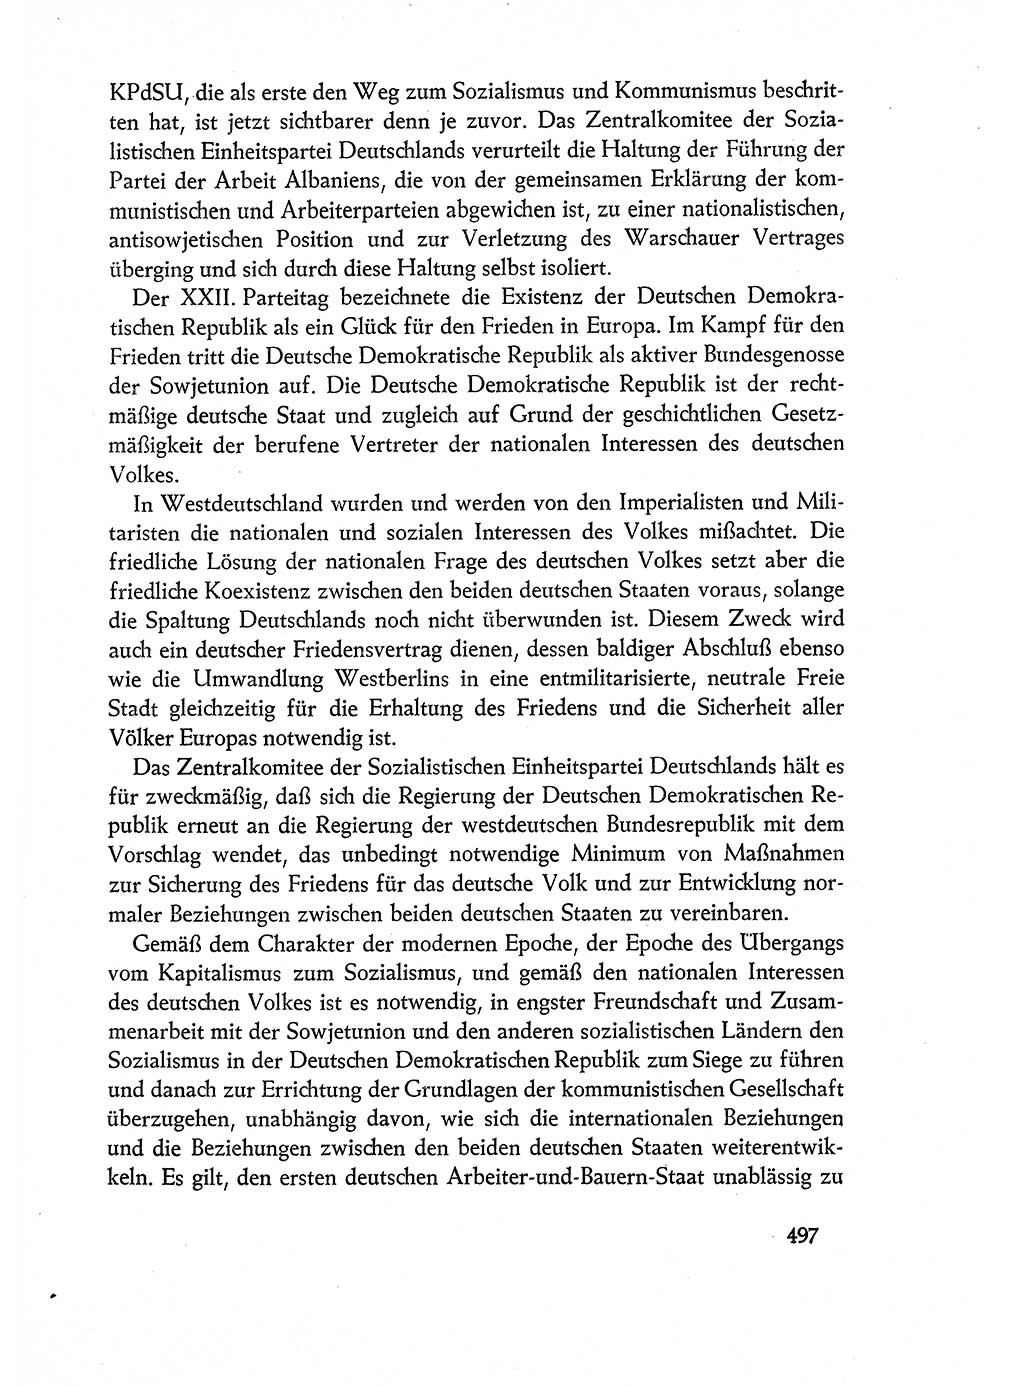 Dokumente der Sozialistischen Einheitspartei Deutschlands (SED) [Deutsche Demokratische Republik (DDR)] 1960-1961, Seite 497 (Dok. SED DDR 1960-1961, S. 497)